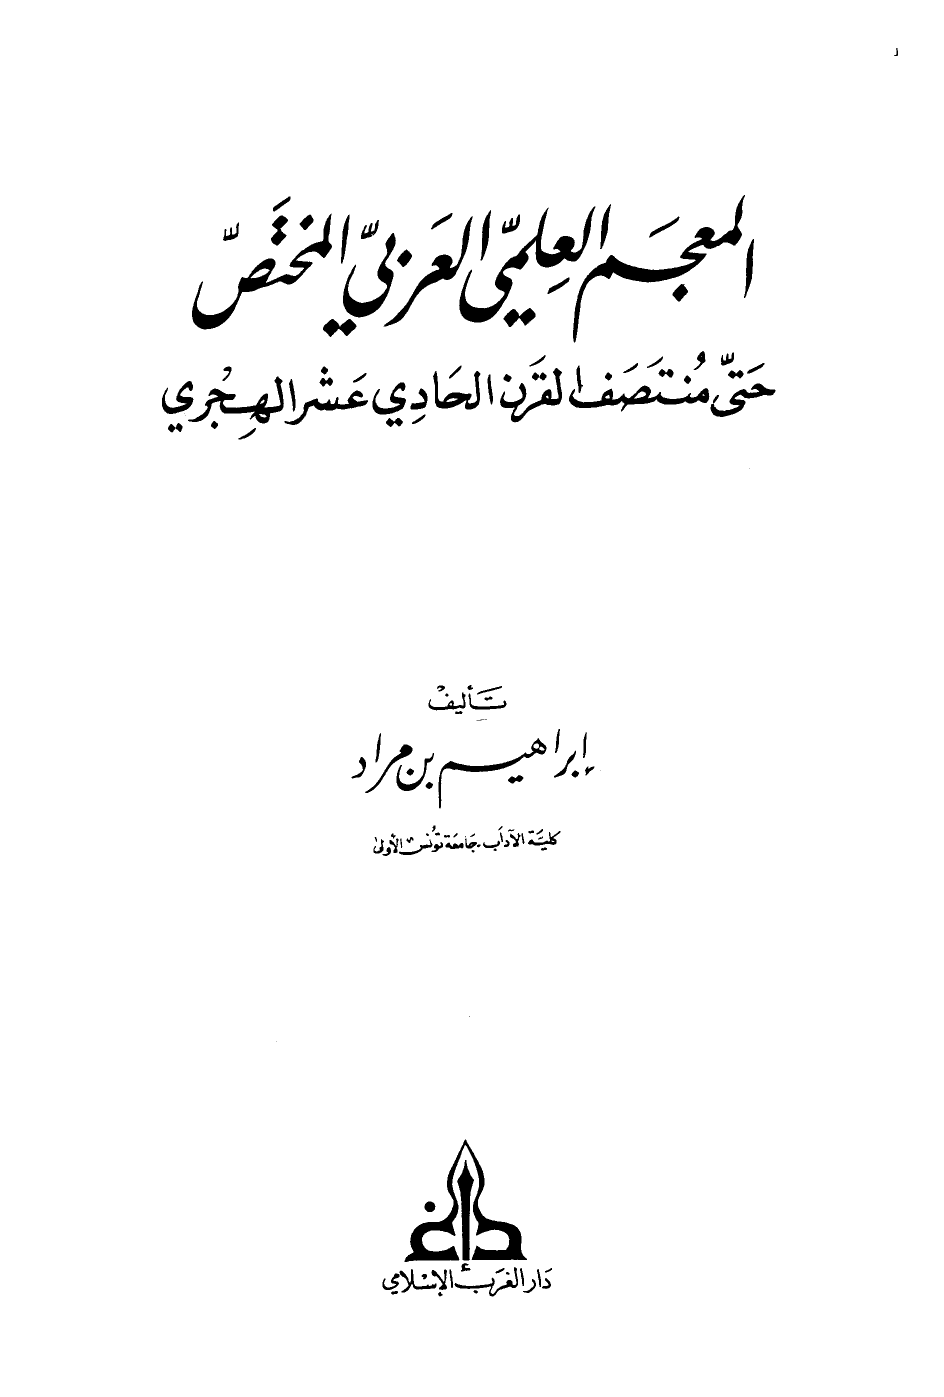 تنزيل وتحميل كتاِب المعجم العلمي العربي المختص حتى منتصف القرن الحادي عشر الهجري pdf برابط مباشر مجاناً 